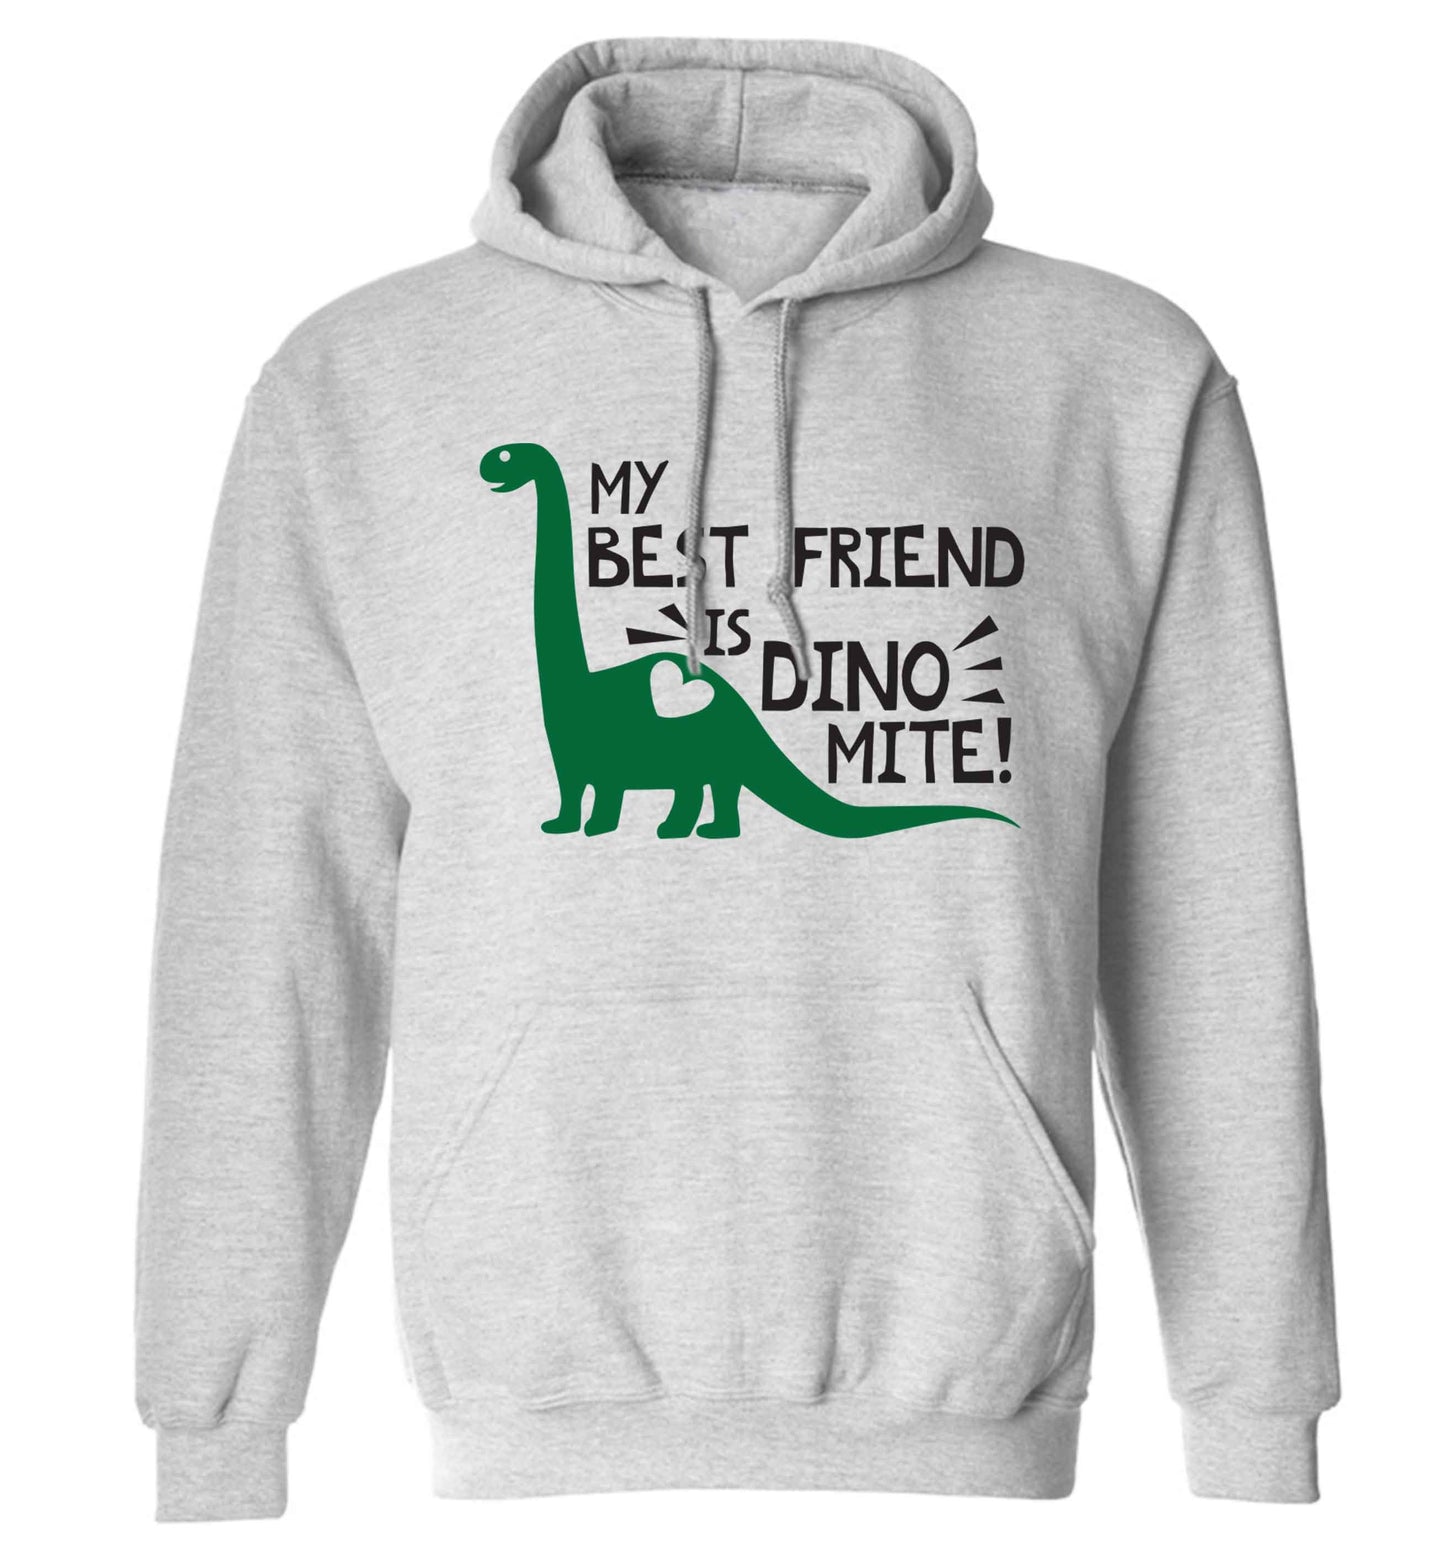 My best friend is dinomite! adults unisex grey hoodie 2XL